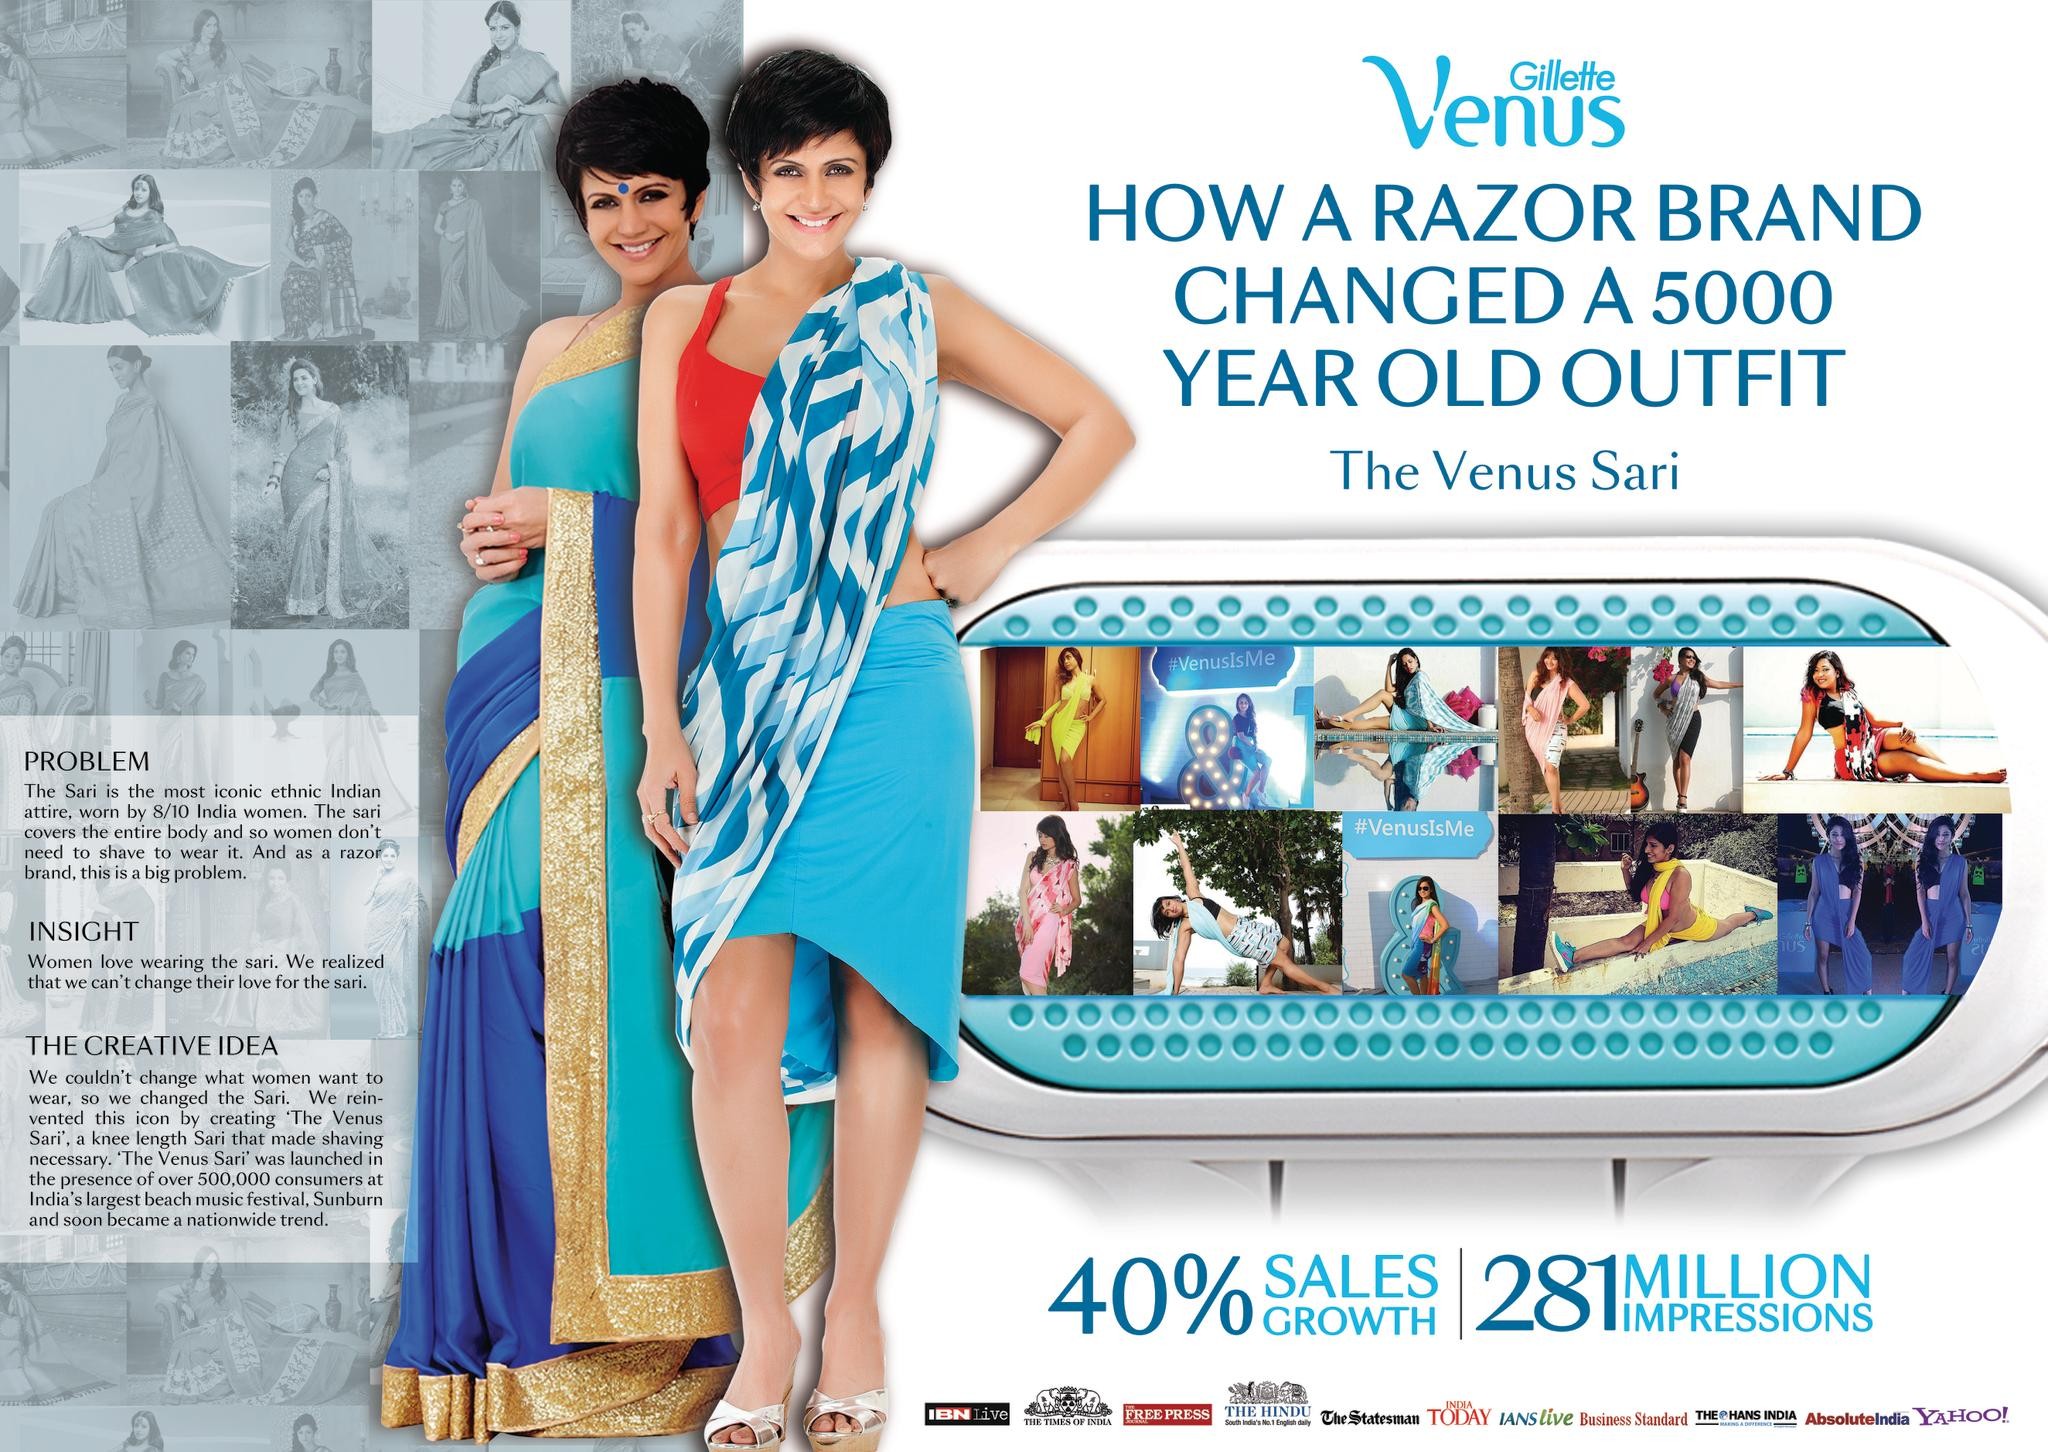 The Venus Sari